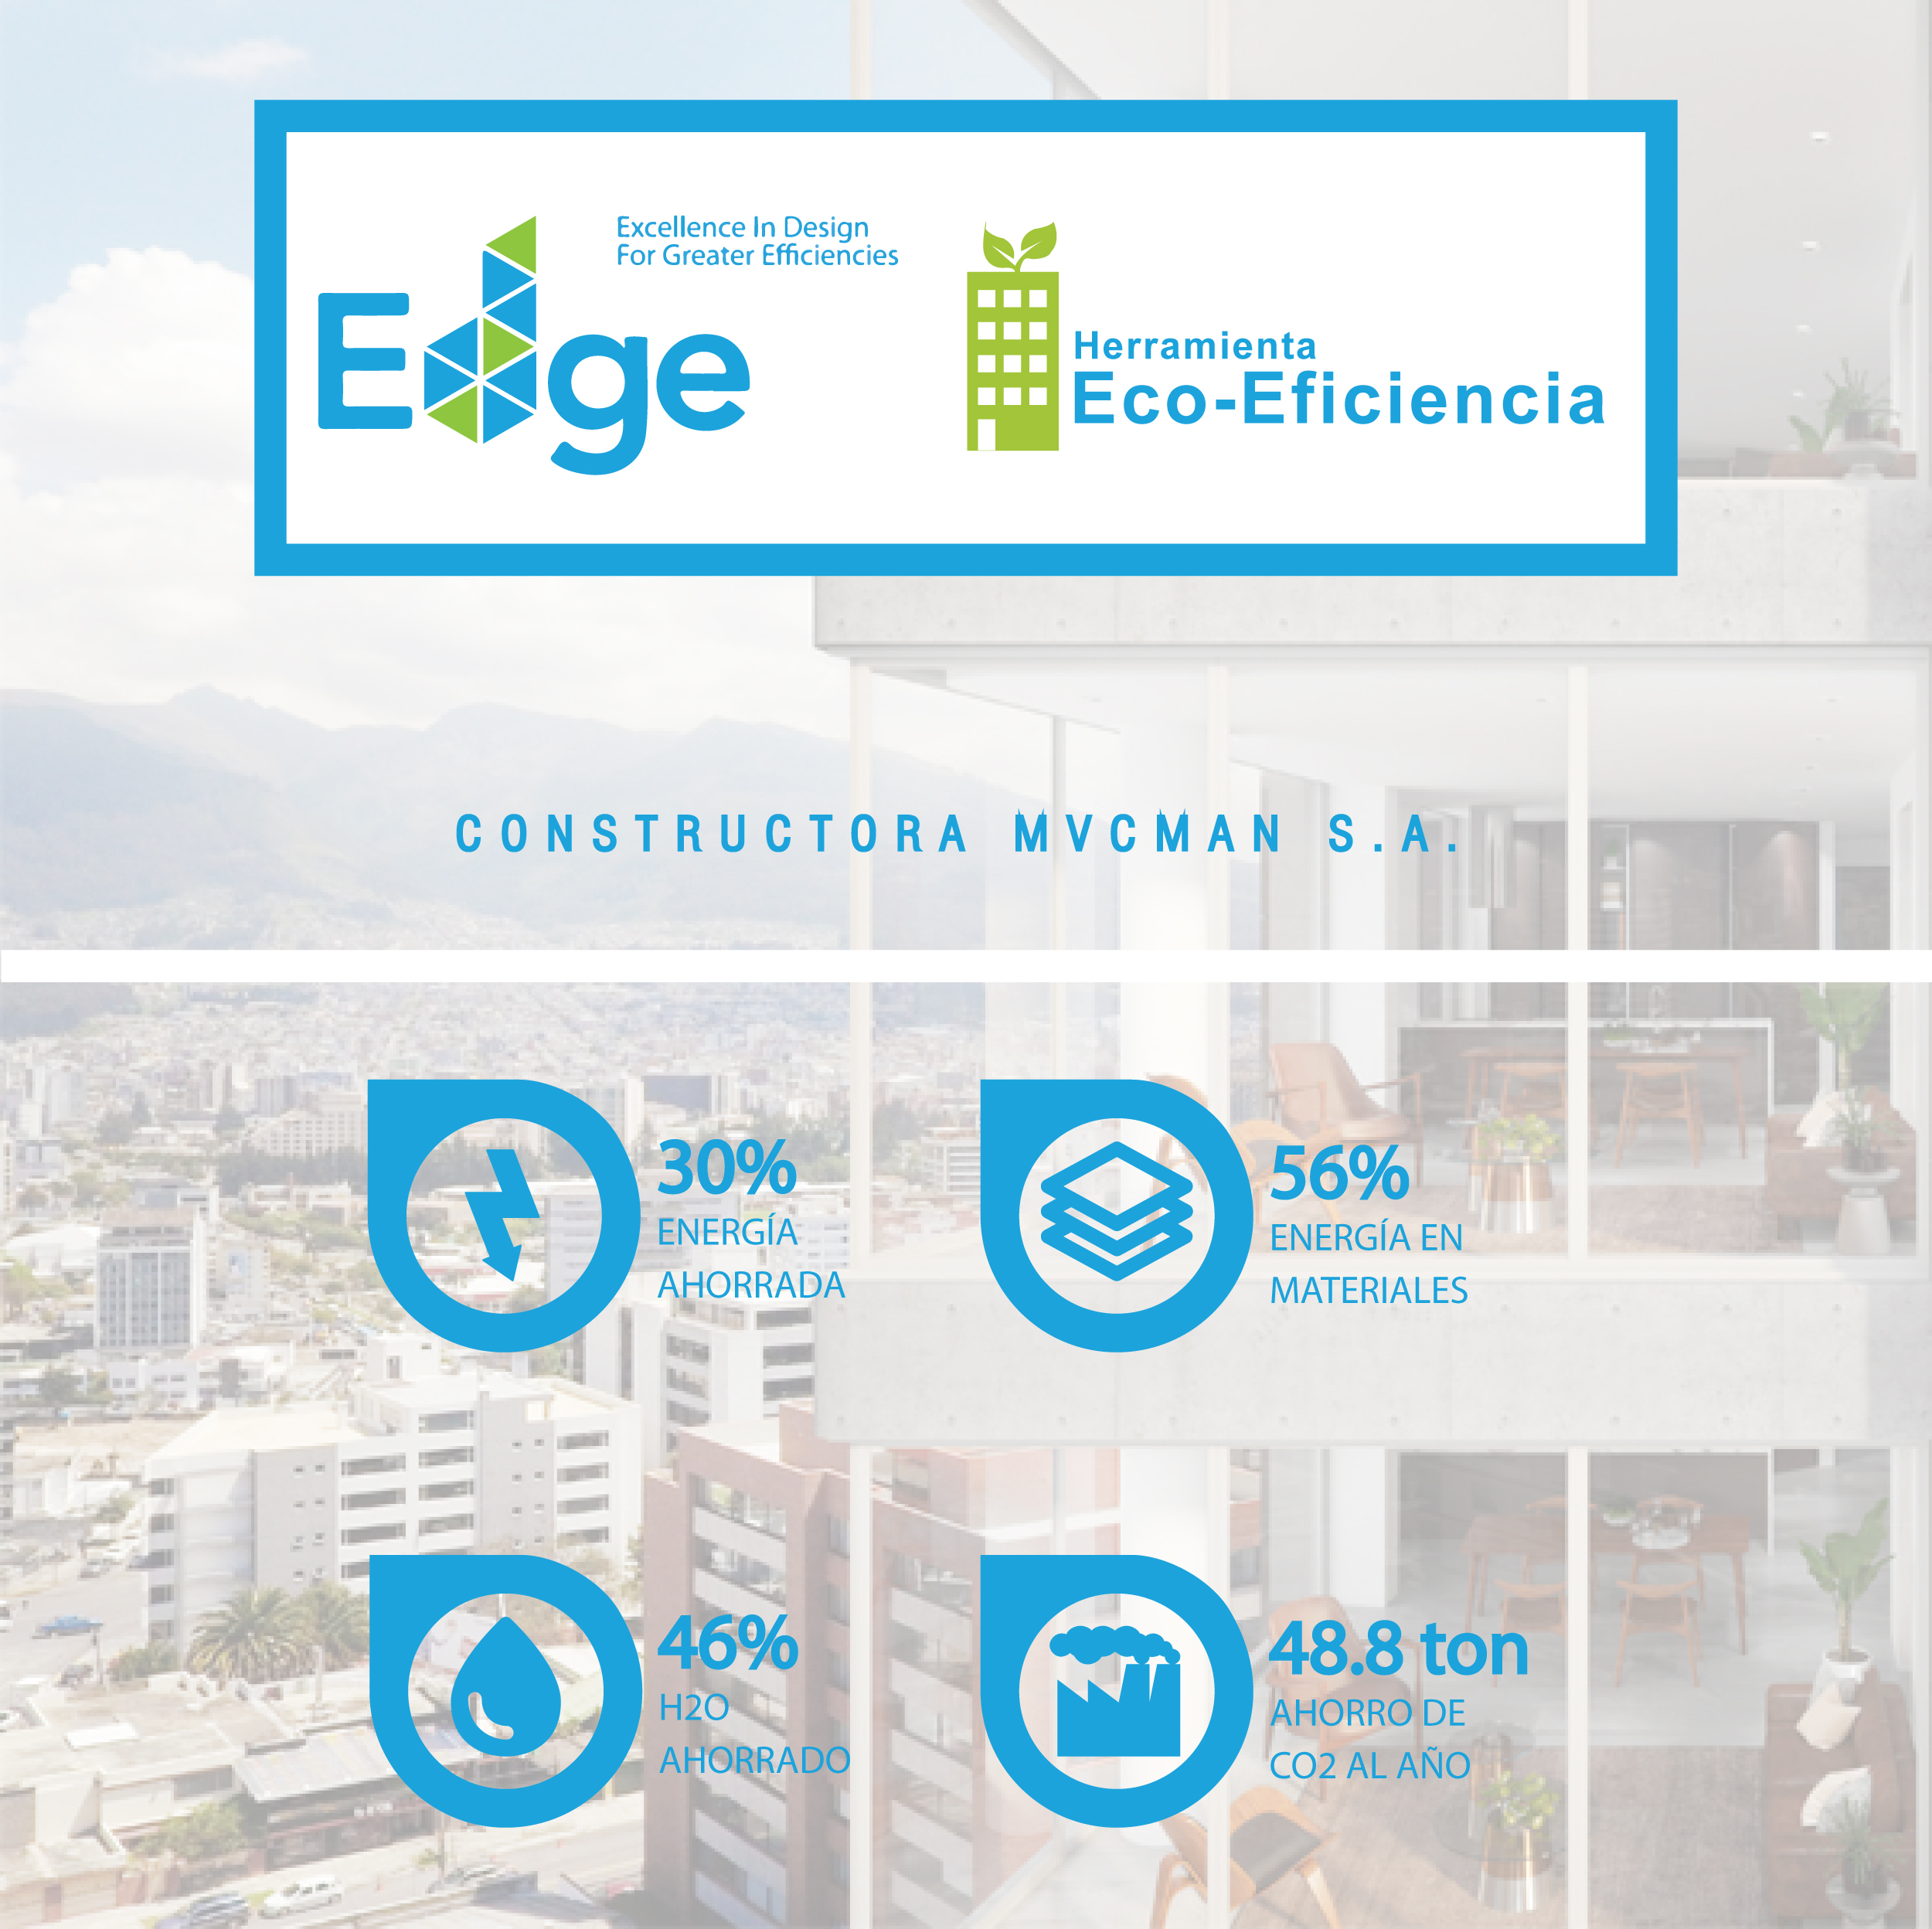 MUCMAN Tower Ecoeficiencia EDGE Quito ECUADOR